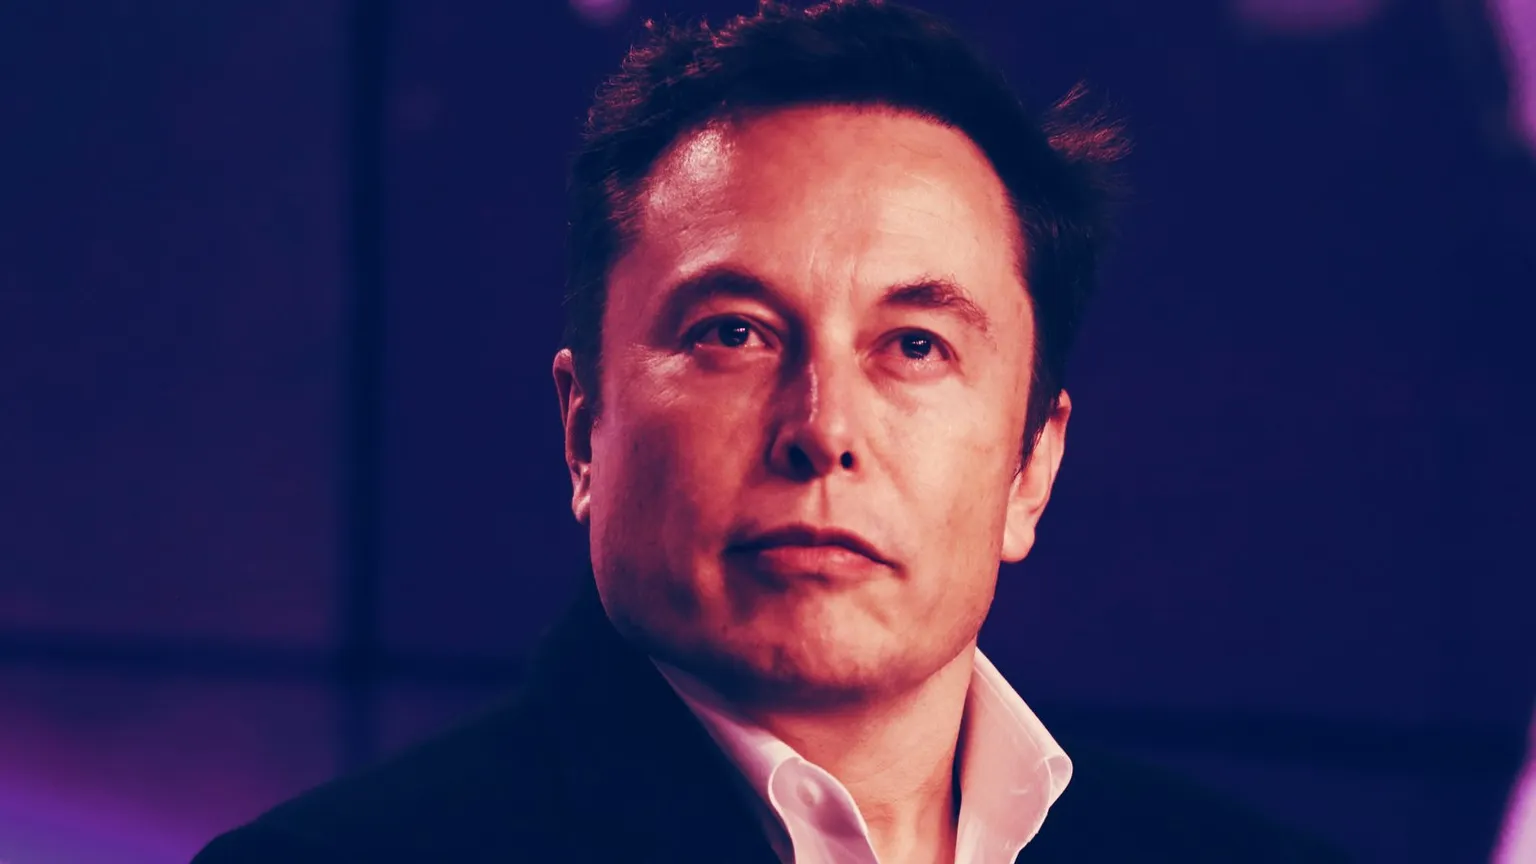 Elon Musk, CEO of Tesla. Image: Shutterstock